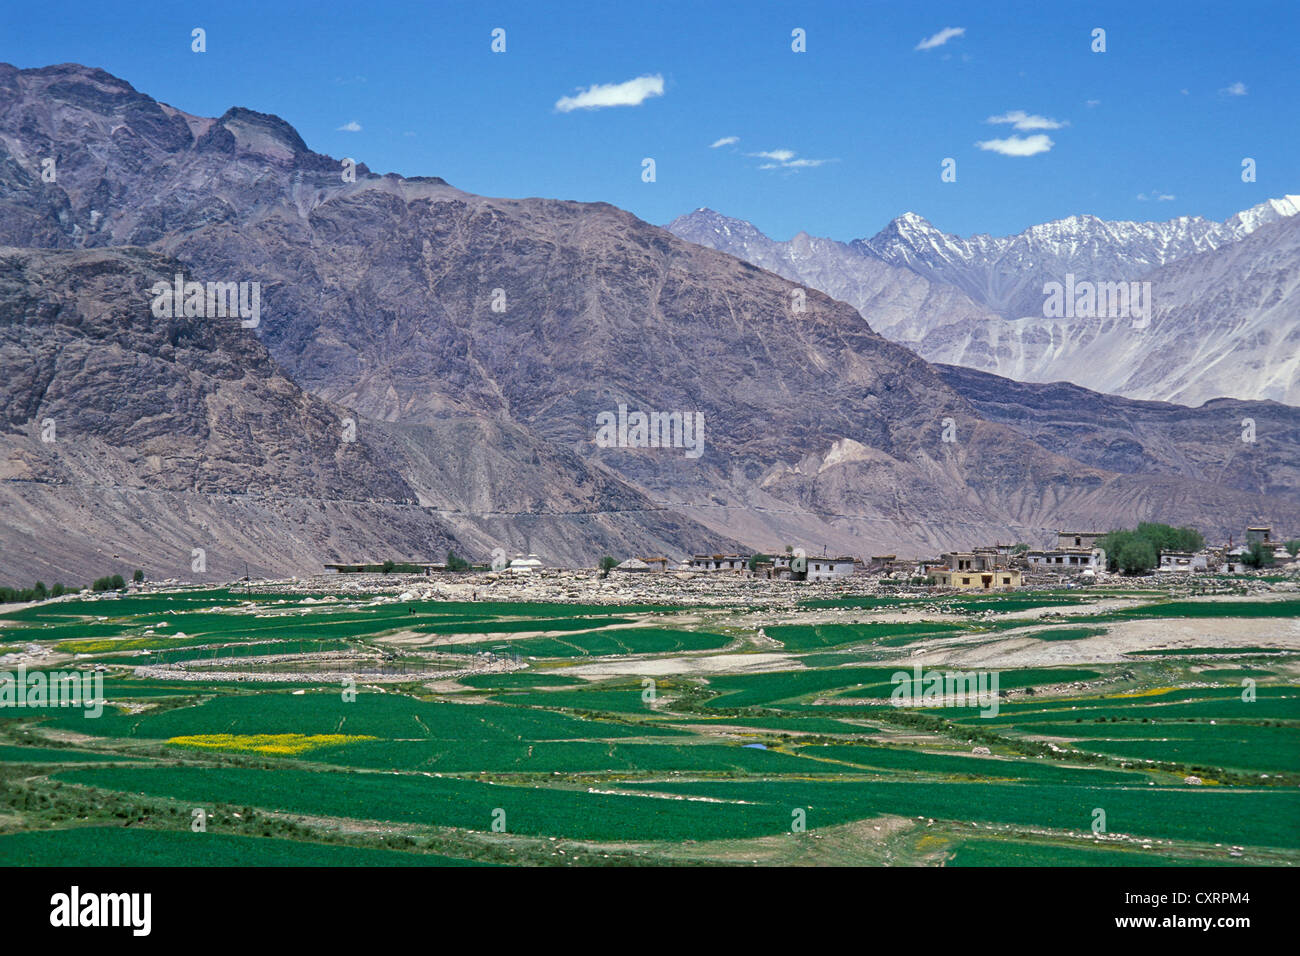 Les champs et les montagnes, la Vallée de Nubra, Ladakh, Himalaya indien, le Jammu-et-Cachemire, l'Inde du Nord, Inde, Asie Banque D'Images